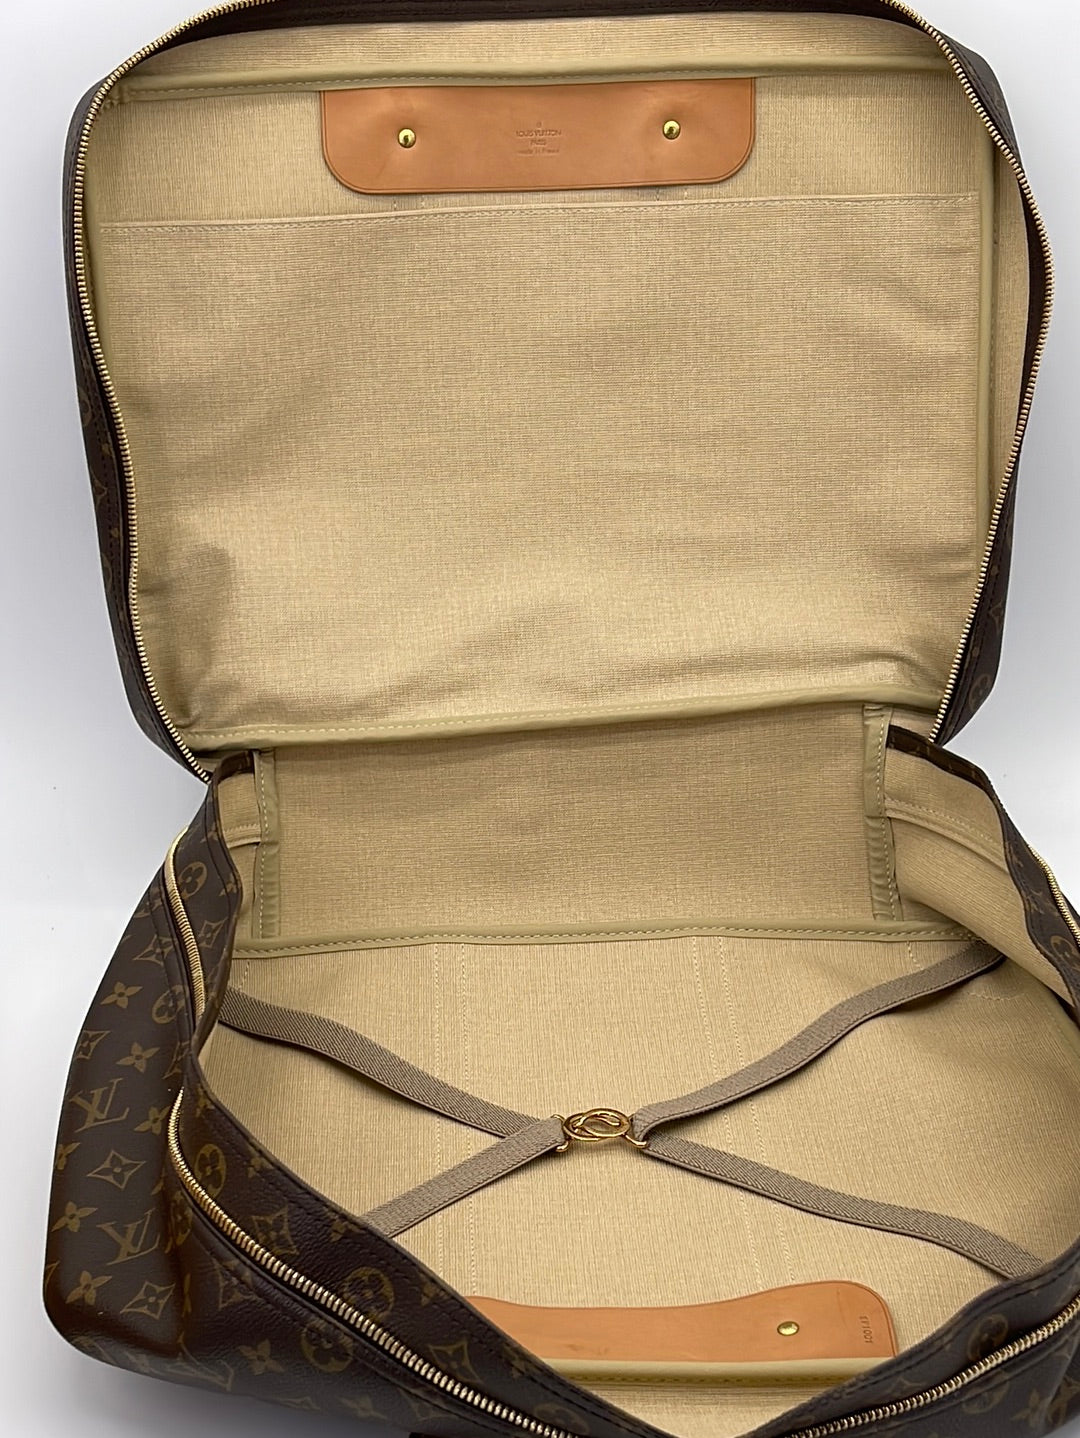 Louis Vuitton Monogram Canvas Sirius 45 Soft Suitcase - Yoogi's Closet